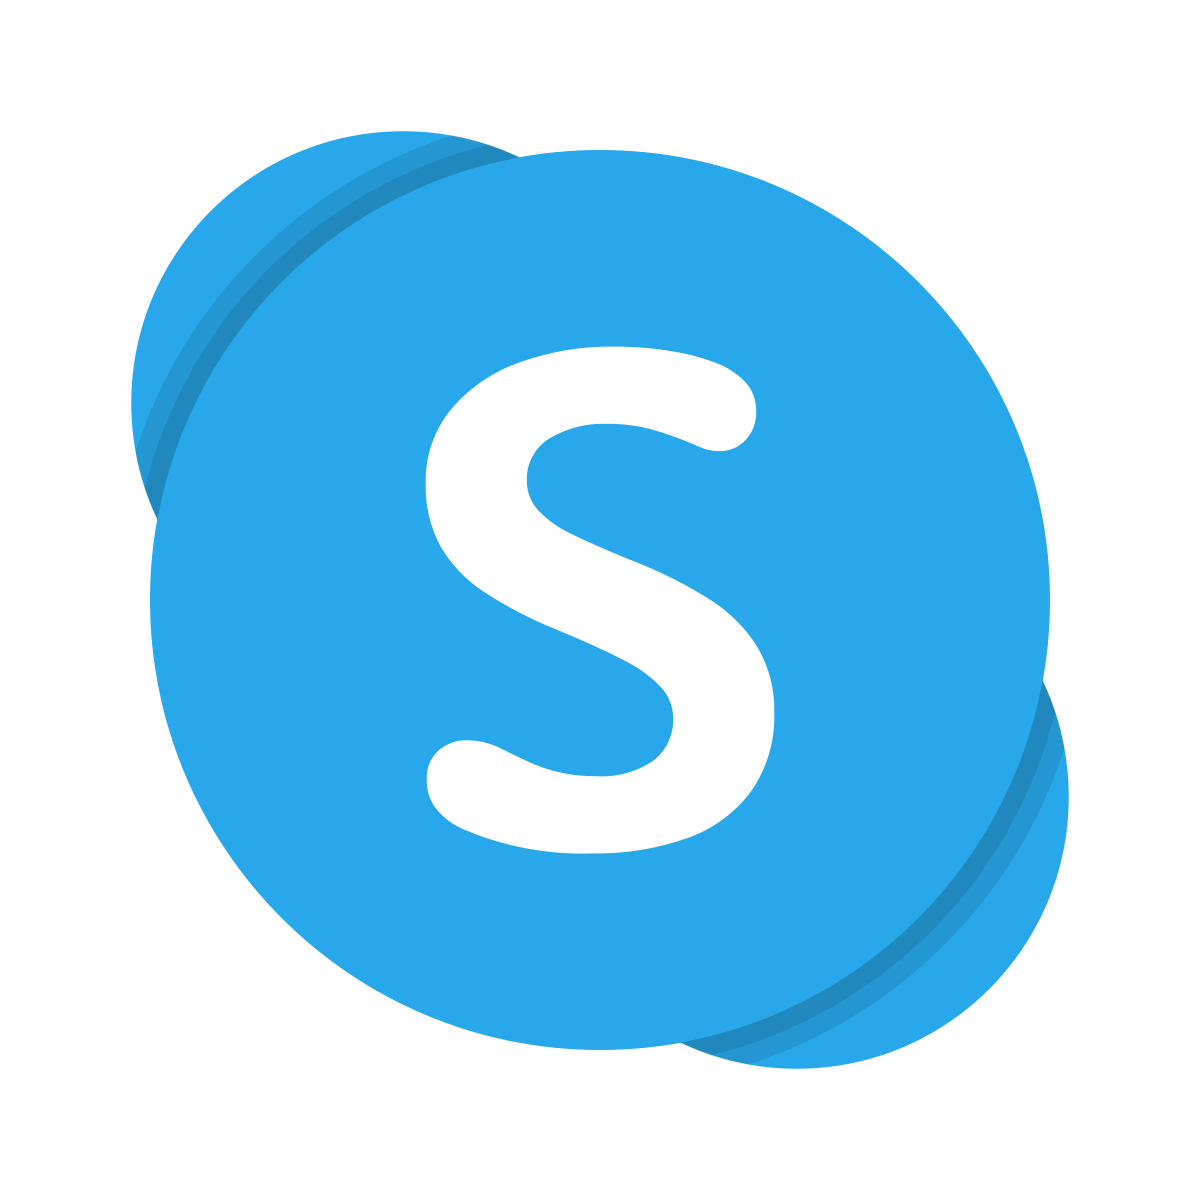 Скайп / Skype 8.80.76.62 для Windows 7, 8, 10 Последняя версия на русском языке